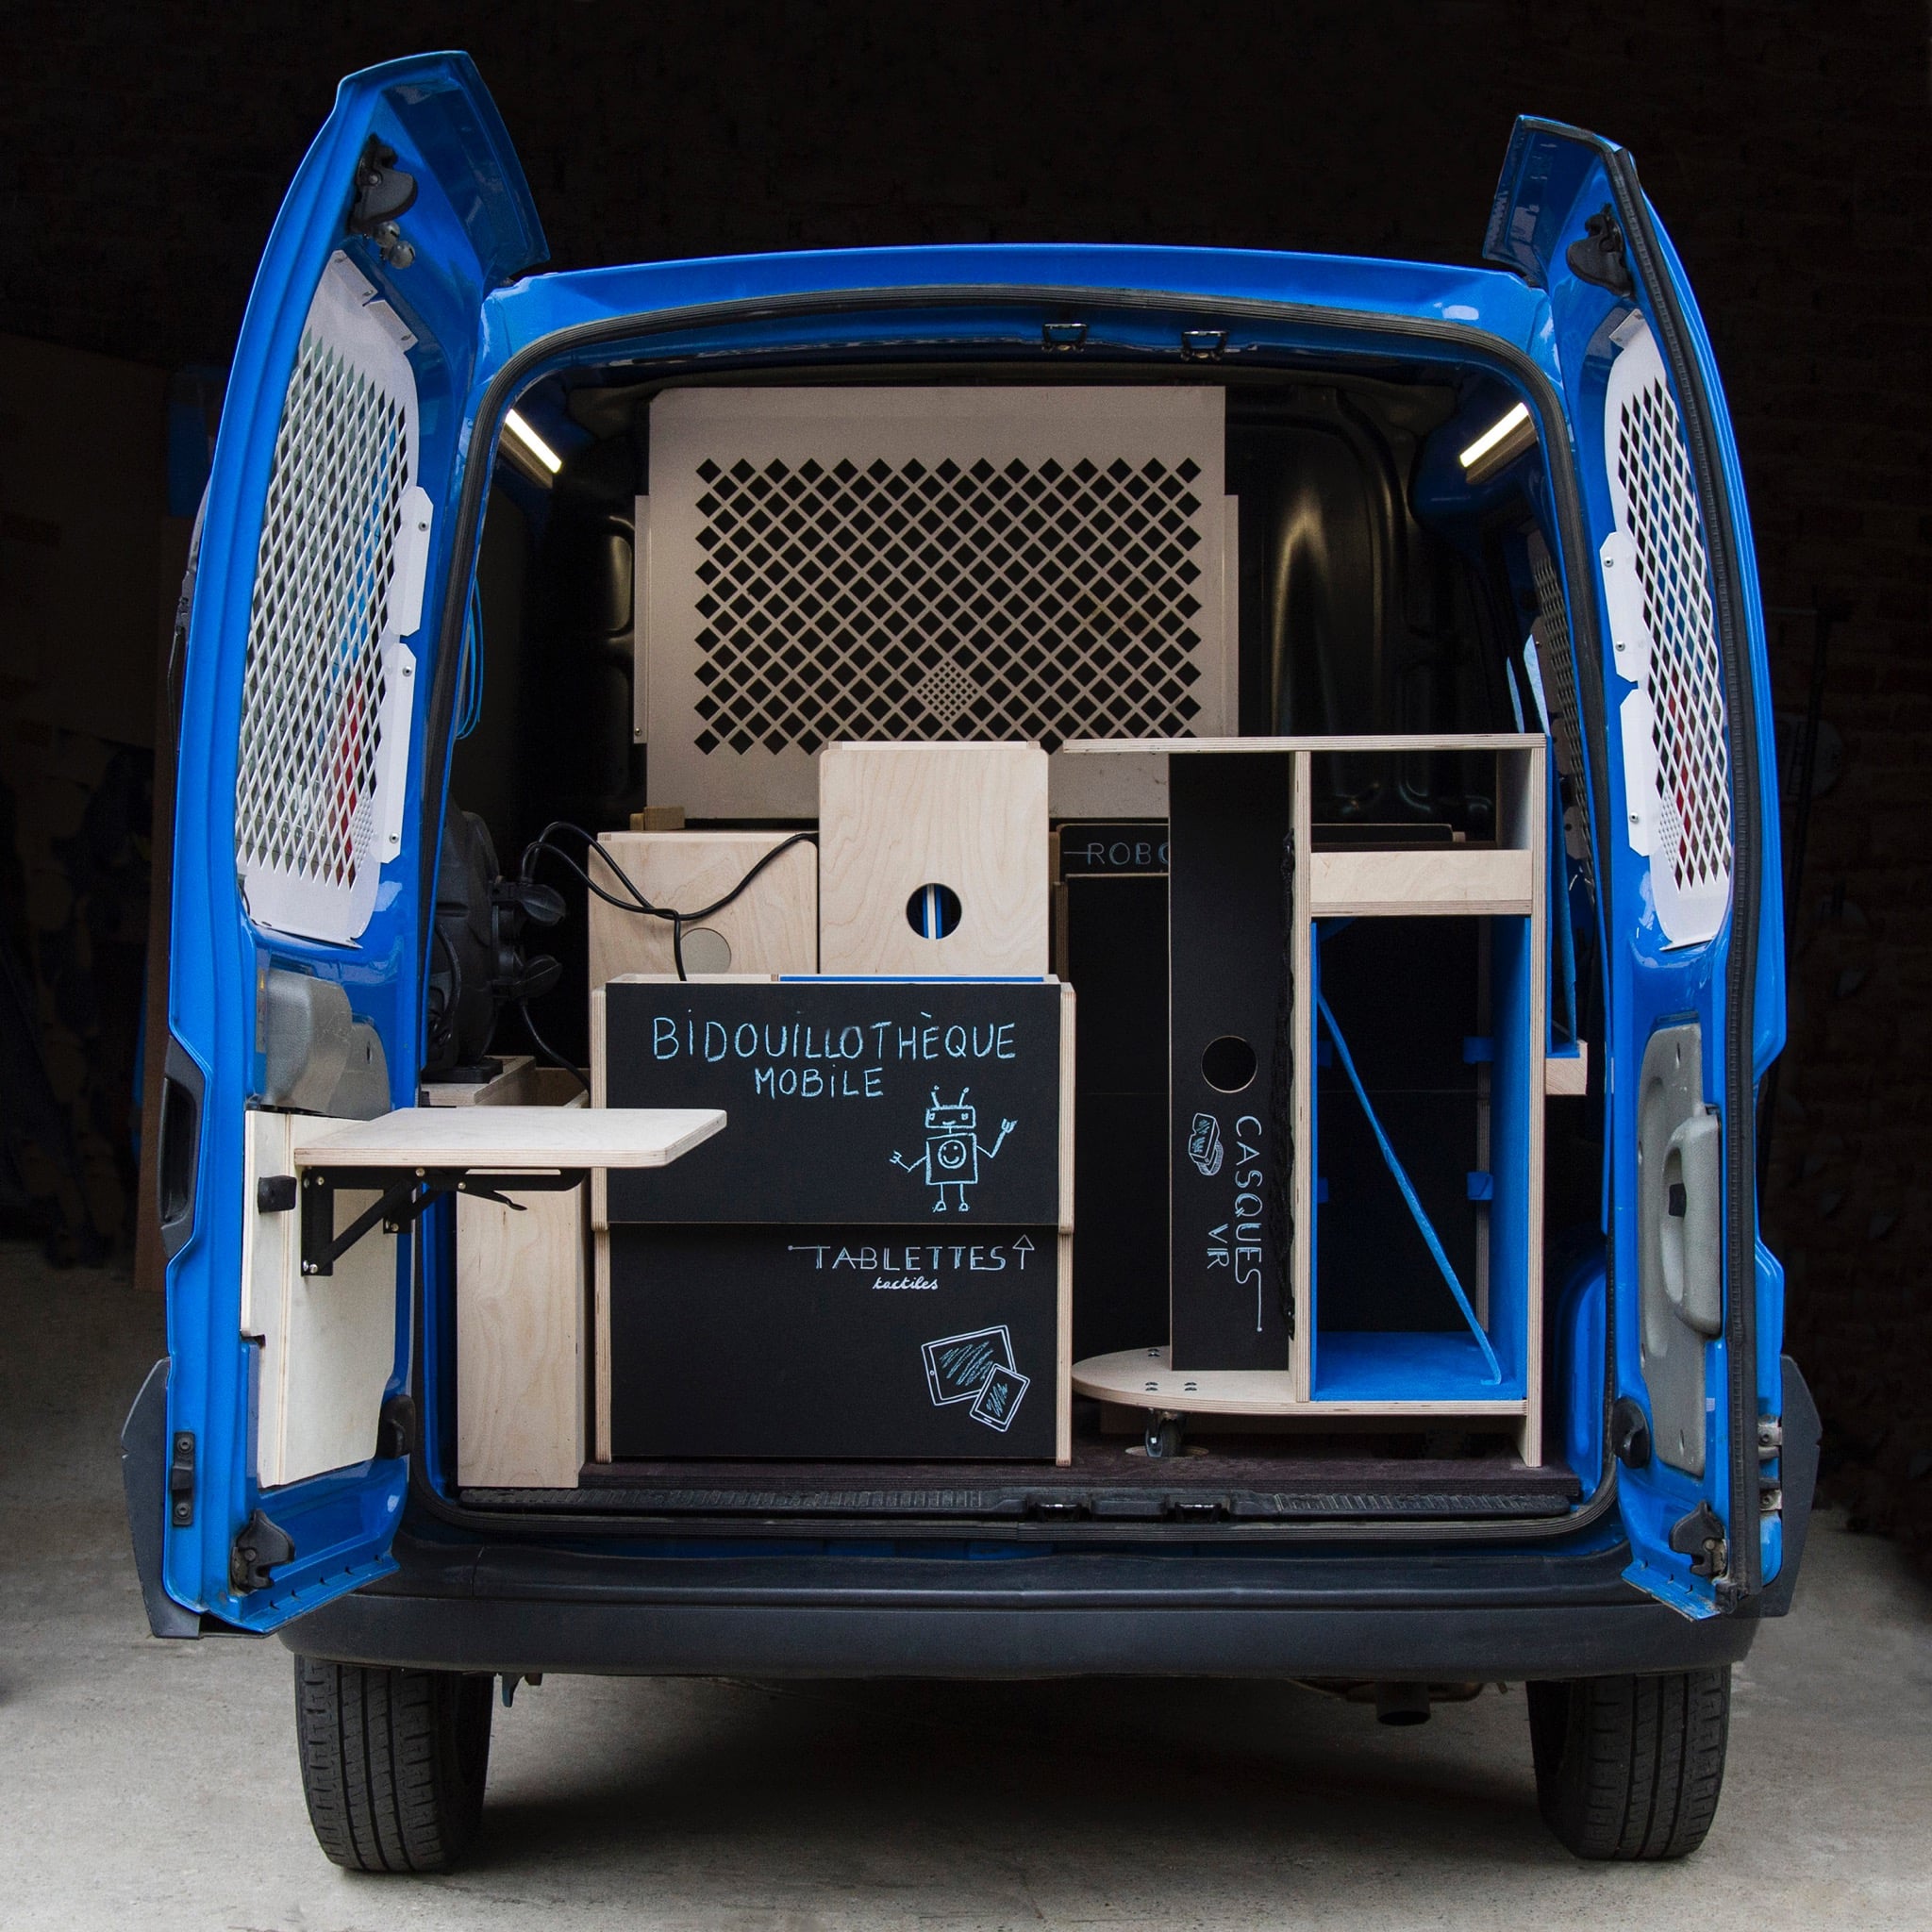 Vue de l'arrière du véhicule de la Bidouillothèque mobile, portes ouvertes, avec le mobilier en bois, bleu et noir.